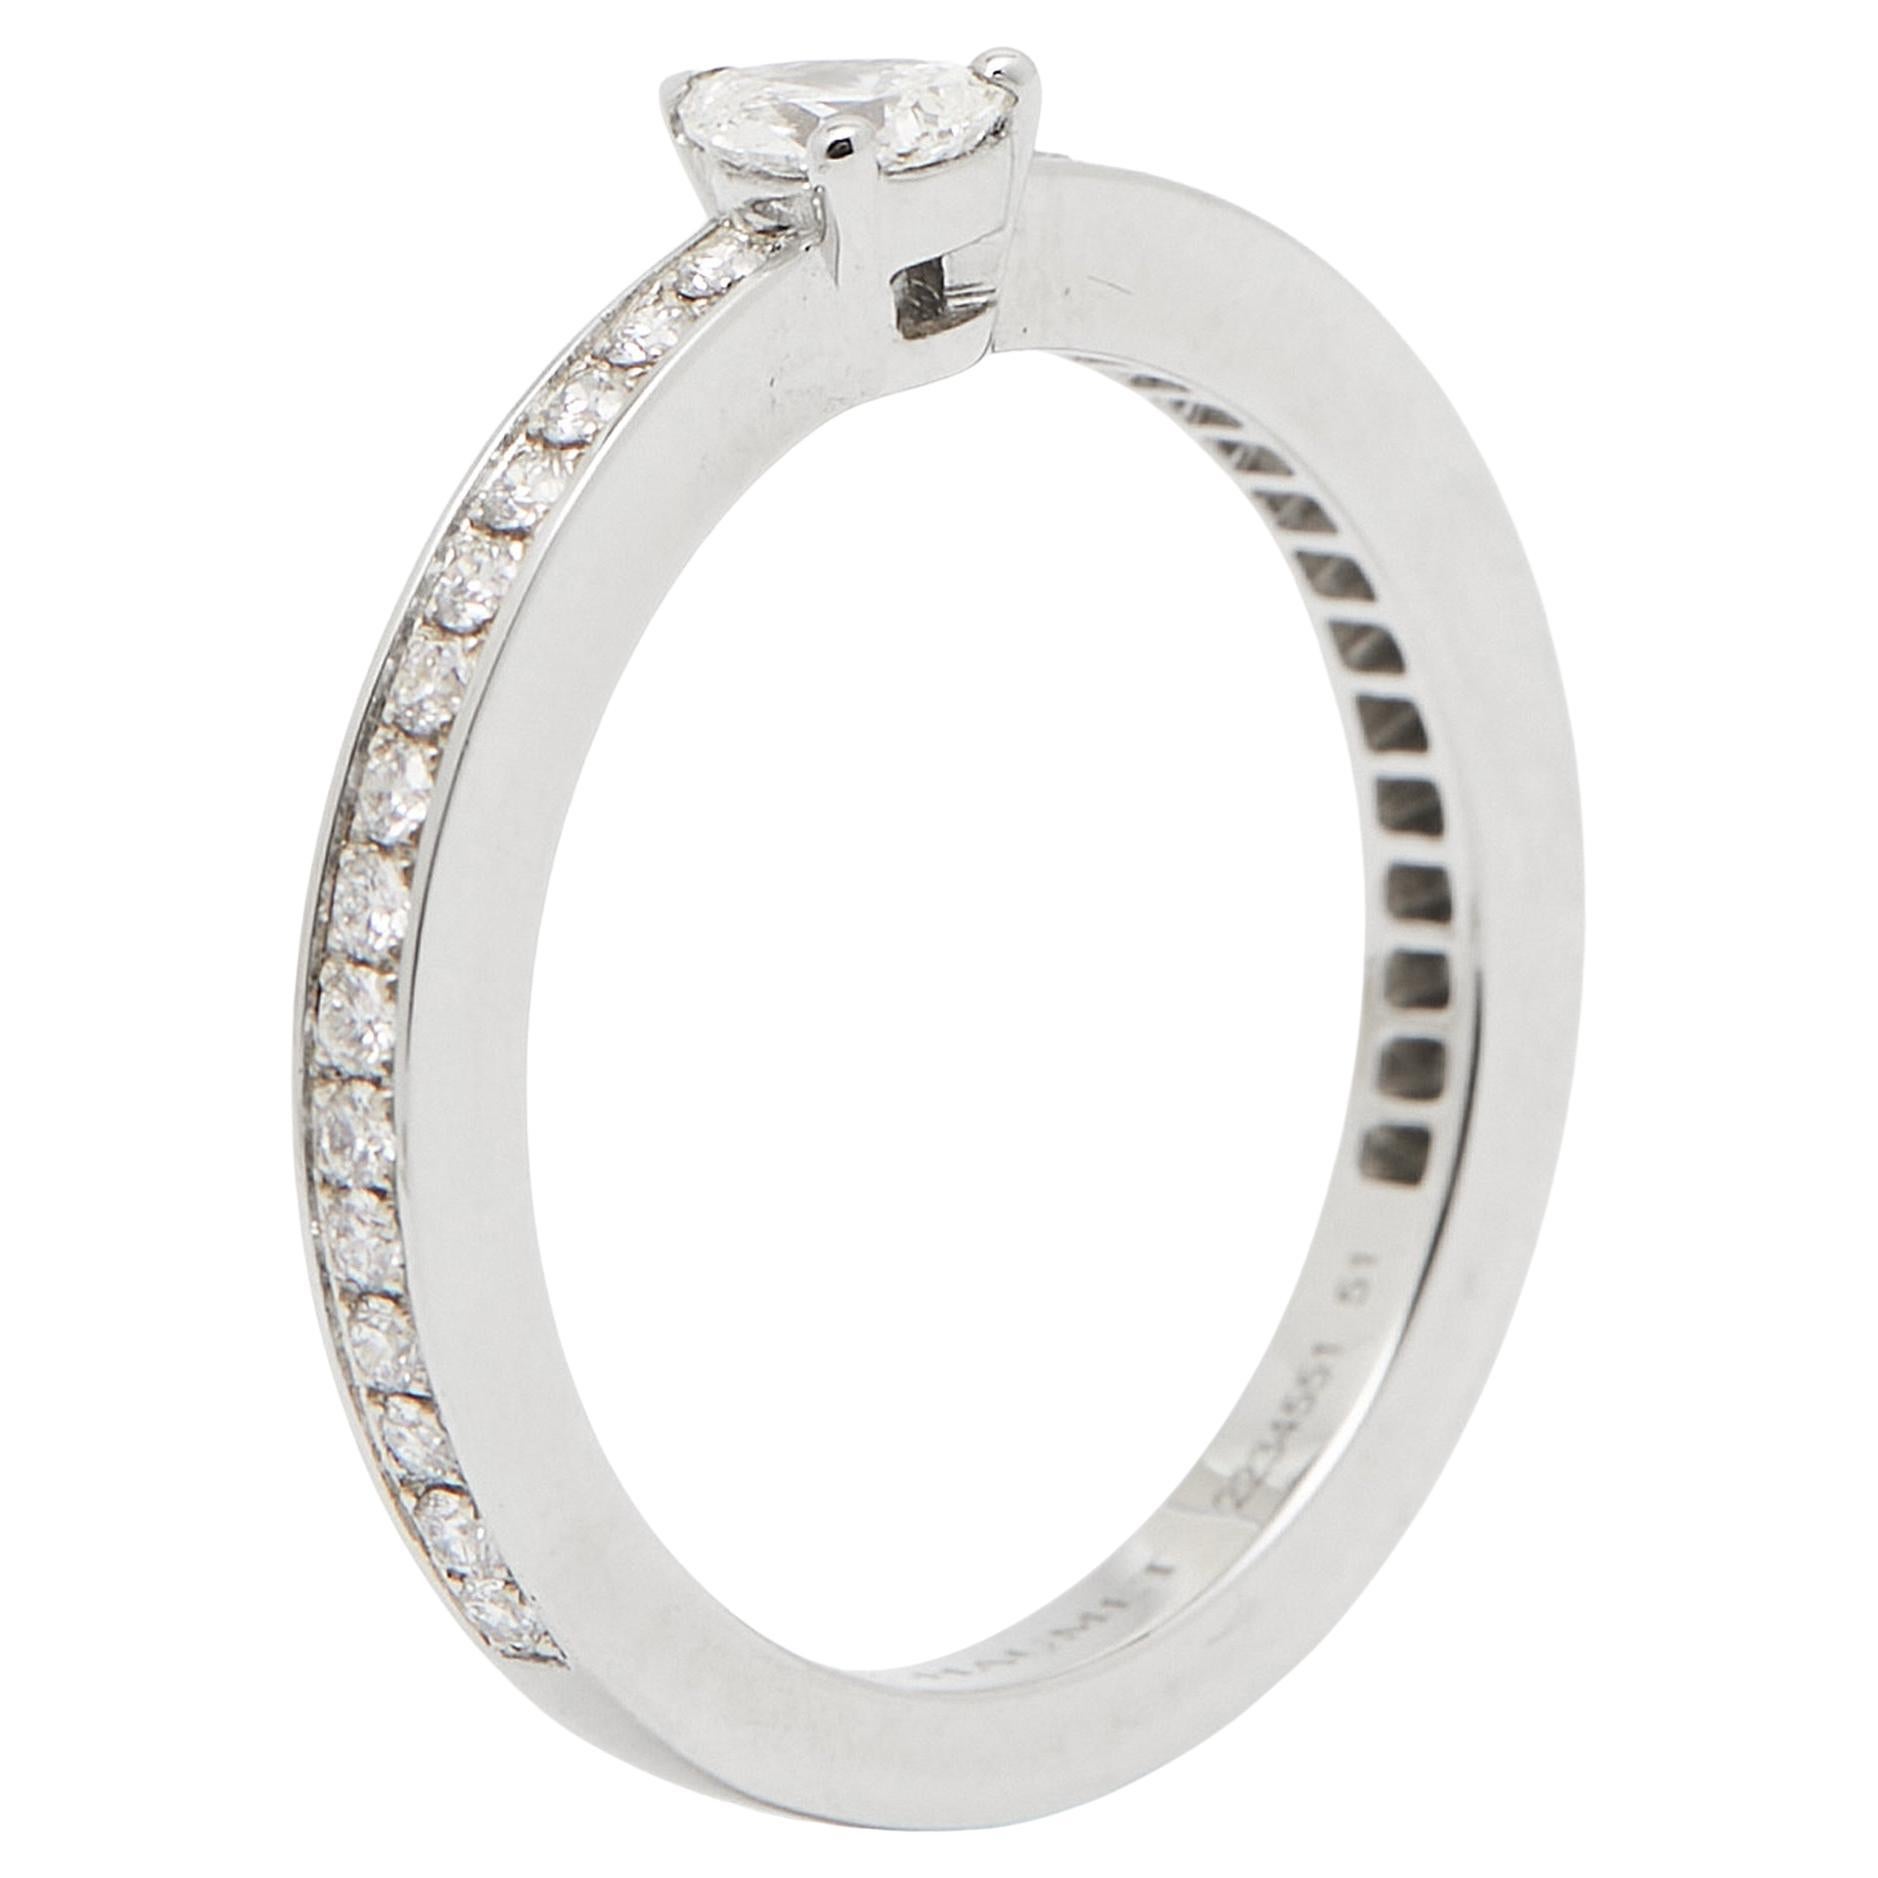 Chaumet Triomphe de Chaumet Diamond Platinum Ring Size 51 For Sale